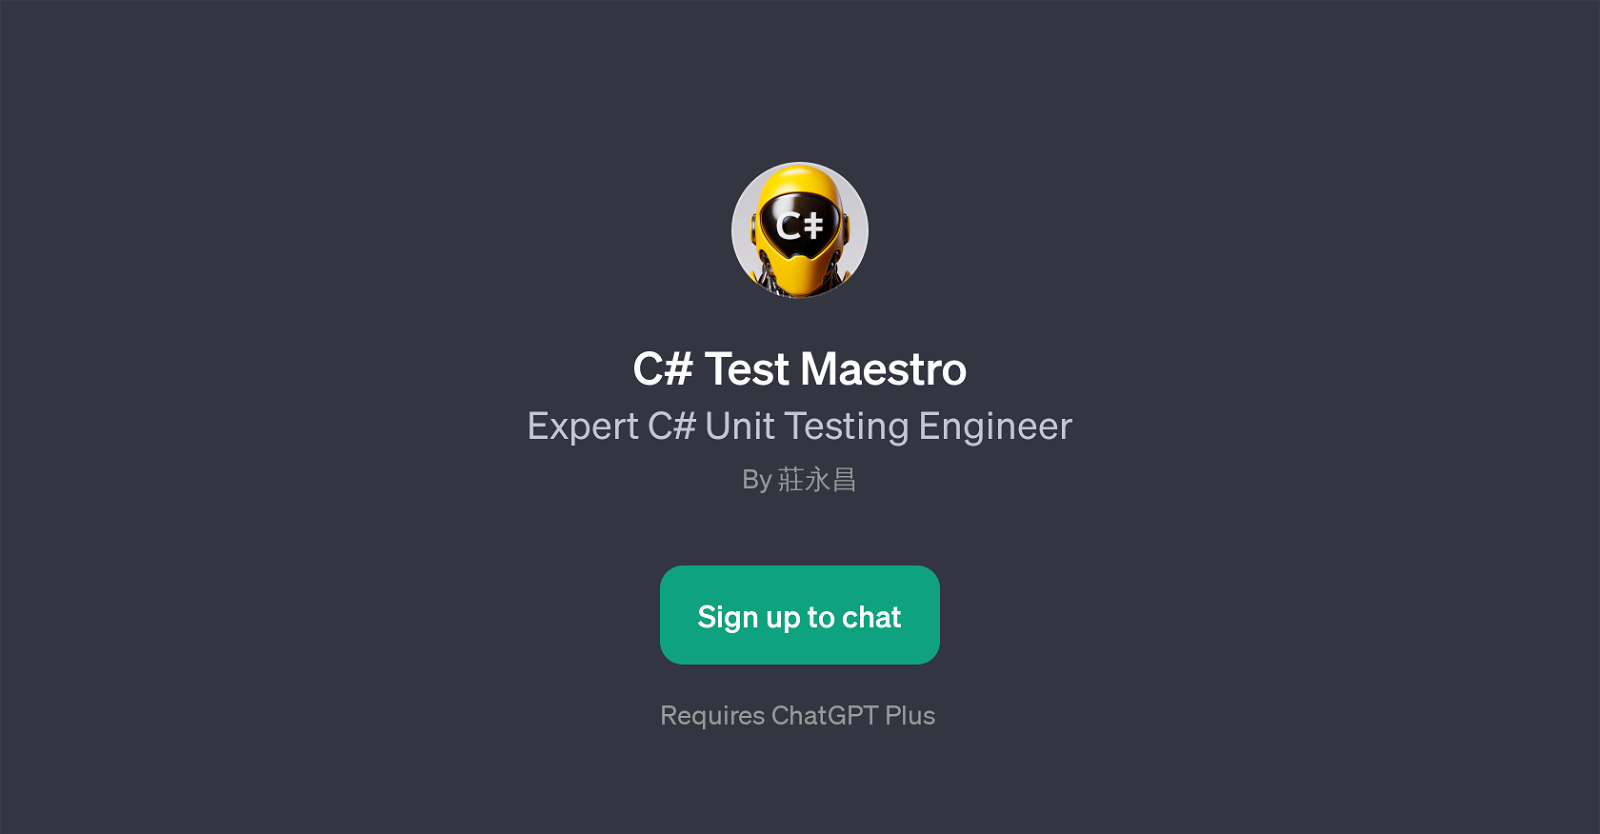 C# Test Maestro website